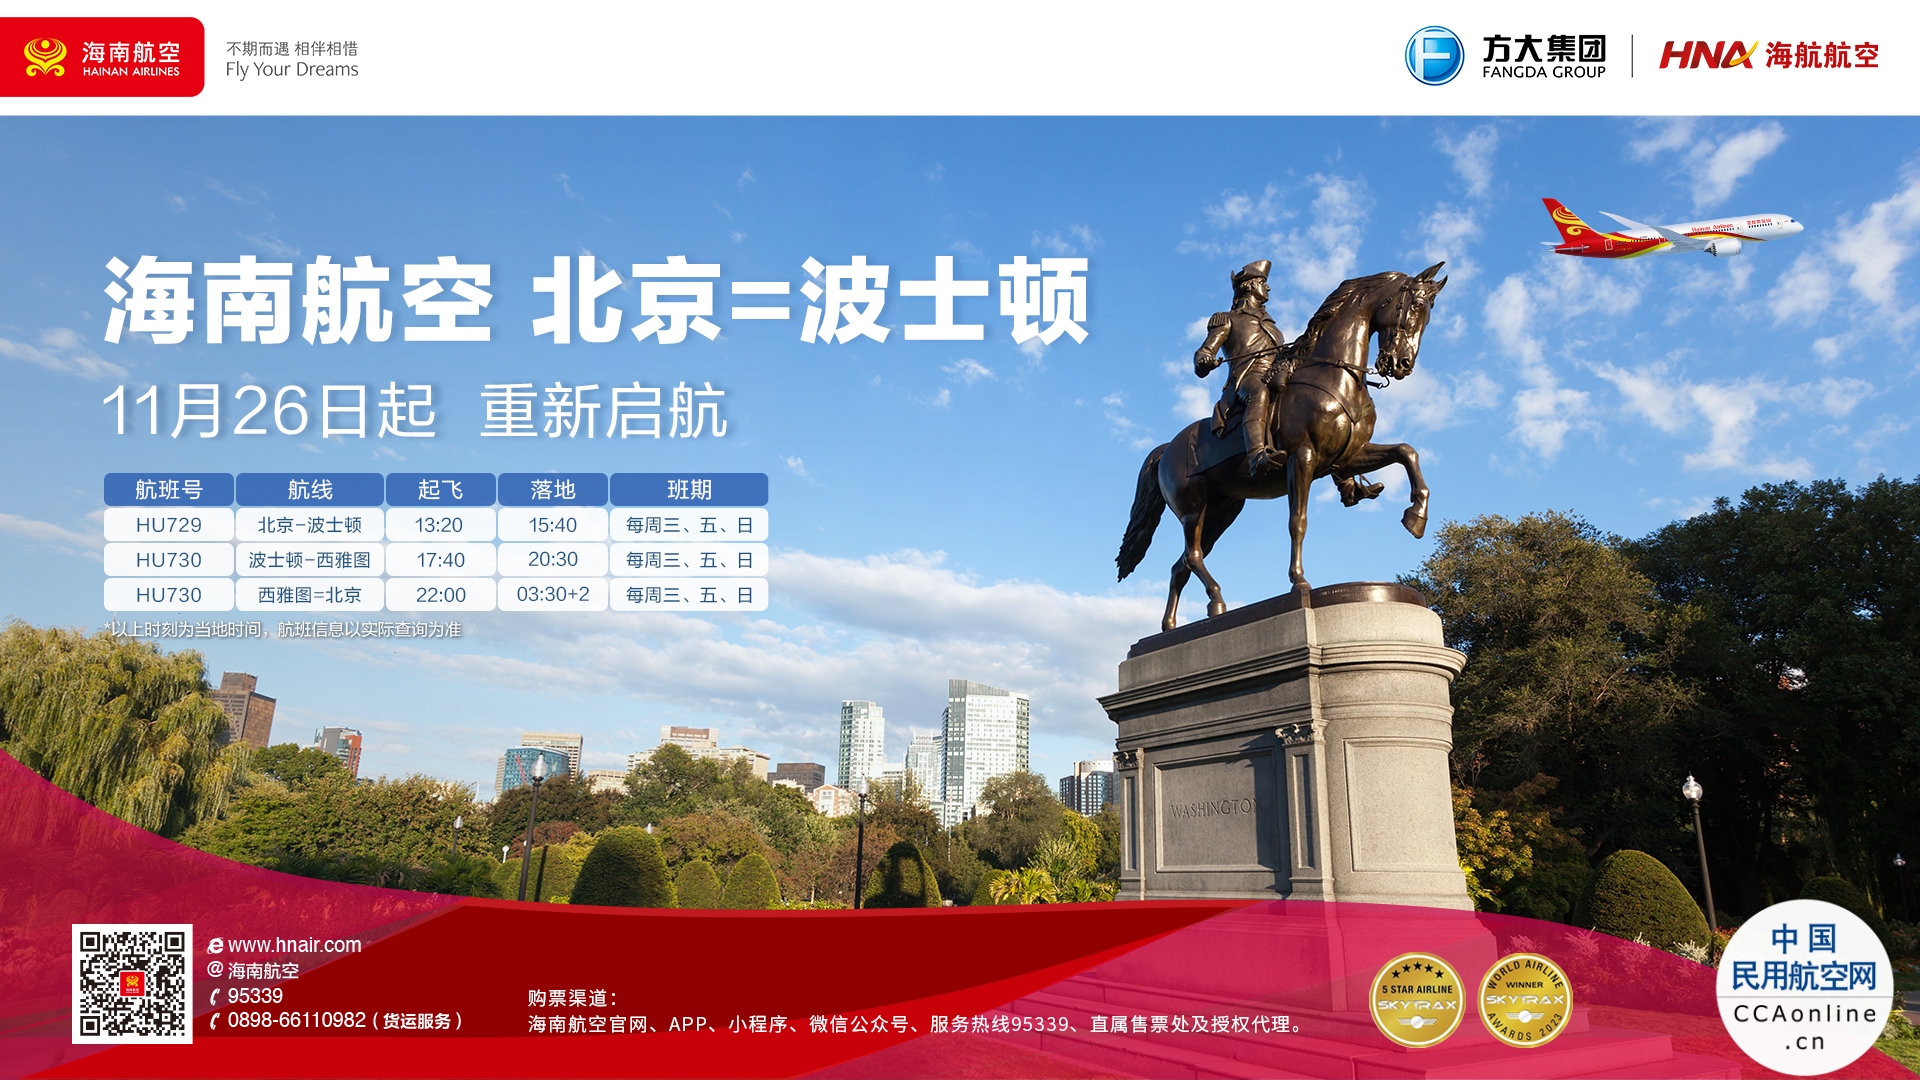 海南航空计划于11月26日起复航北京—波士顿/波士顿—西雅图—北京国际航线